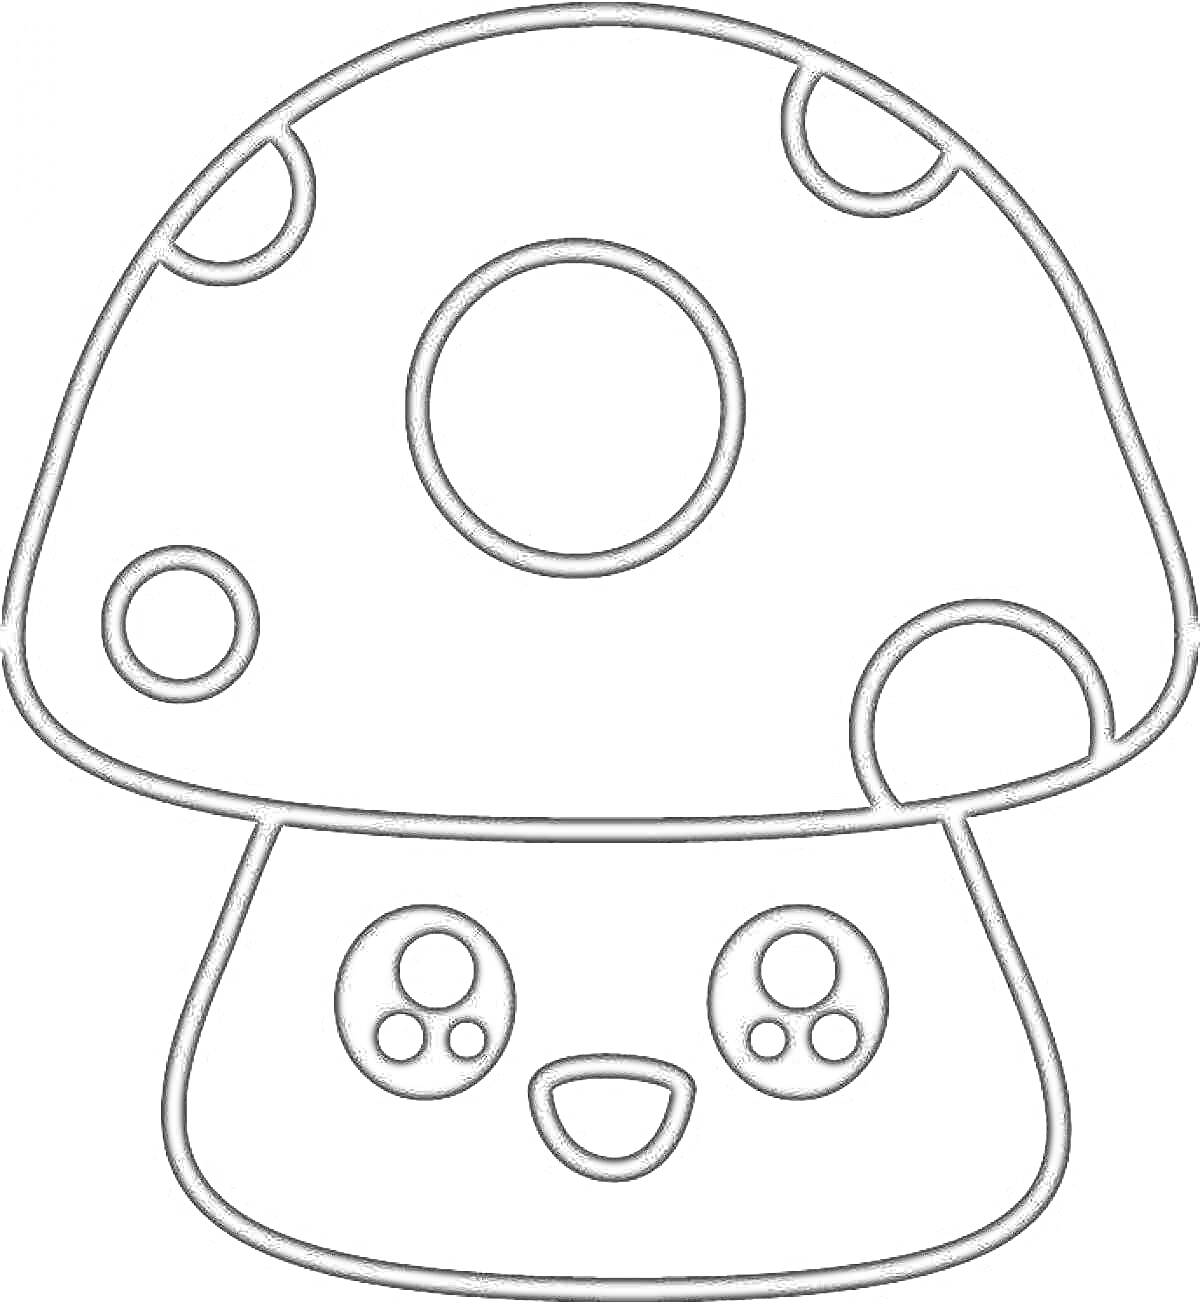 Раскраска Кавайный грибок с большими глазами, точками на шляпке и милой улыбкой